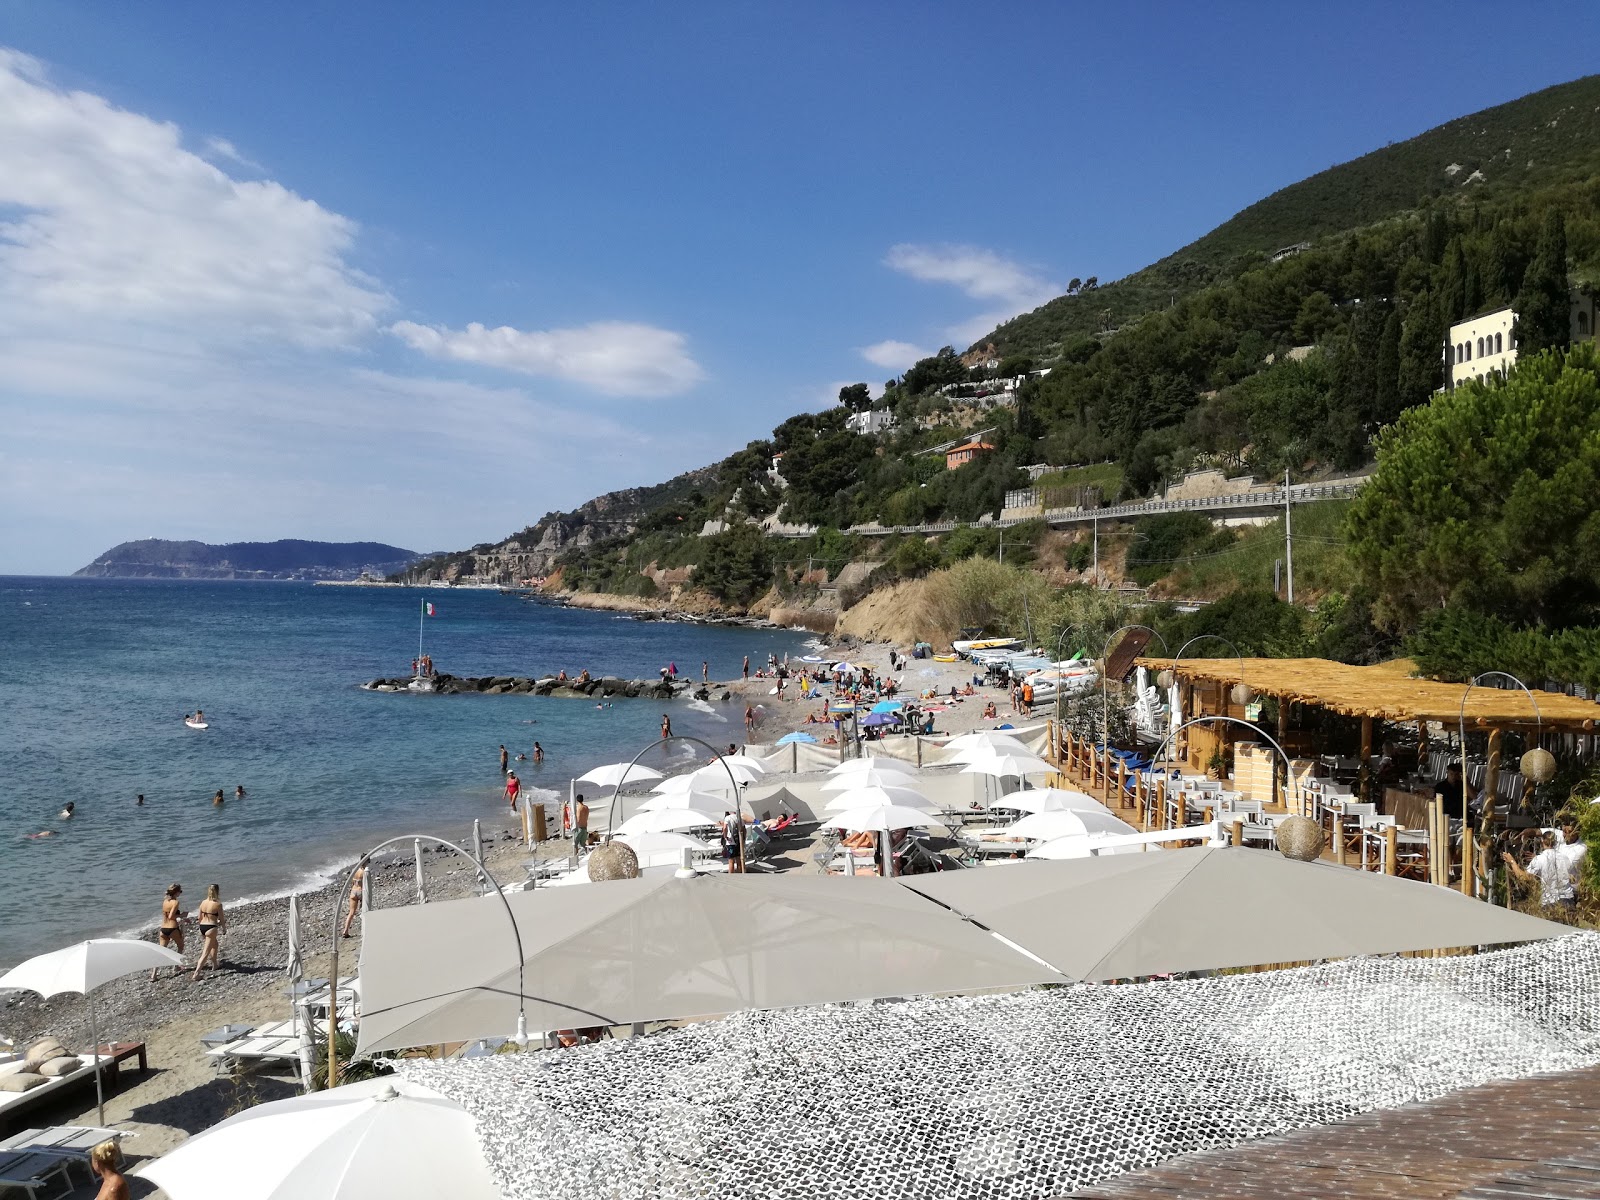 Foto av Spiaggia libera Alassio med medium nivå av renlighet